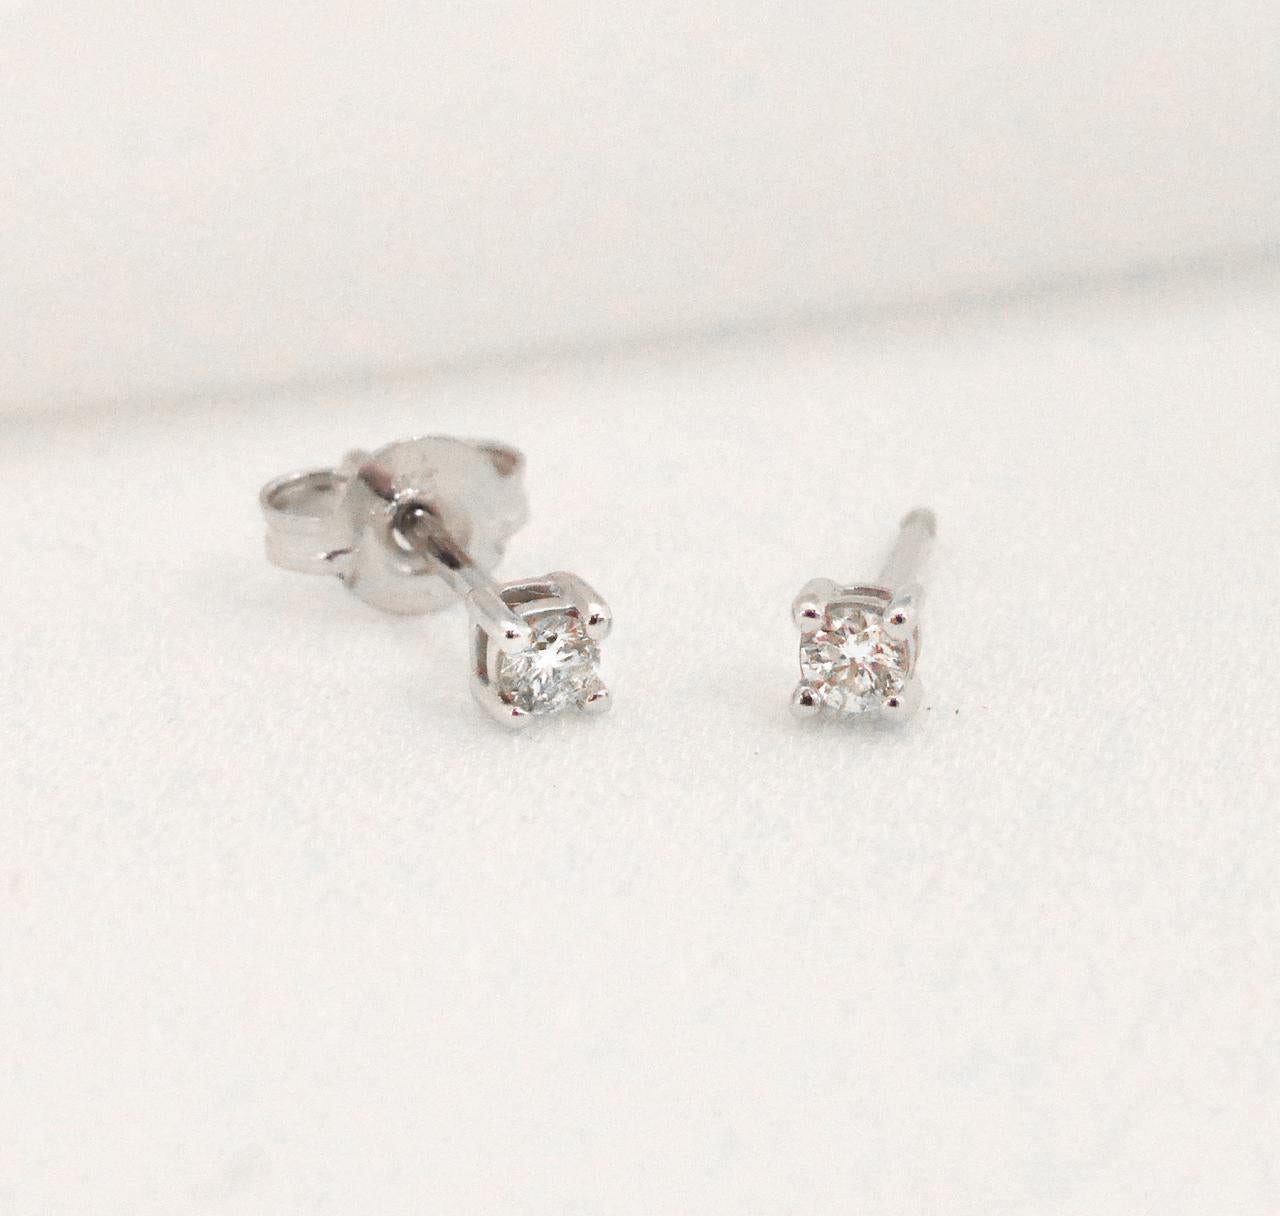 Petit diamond stud earrings